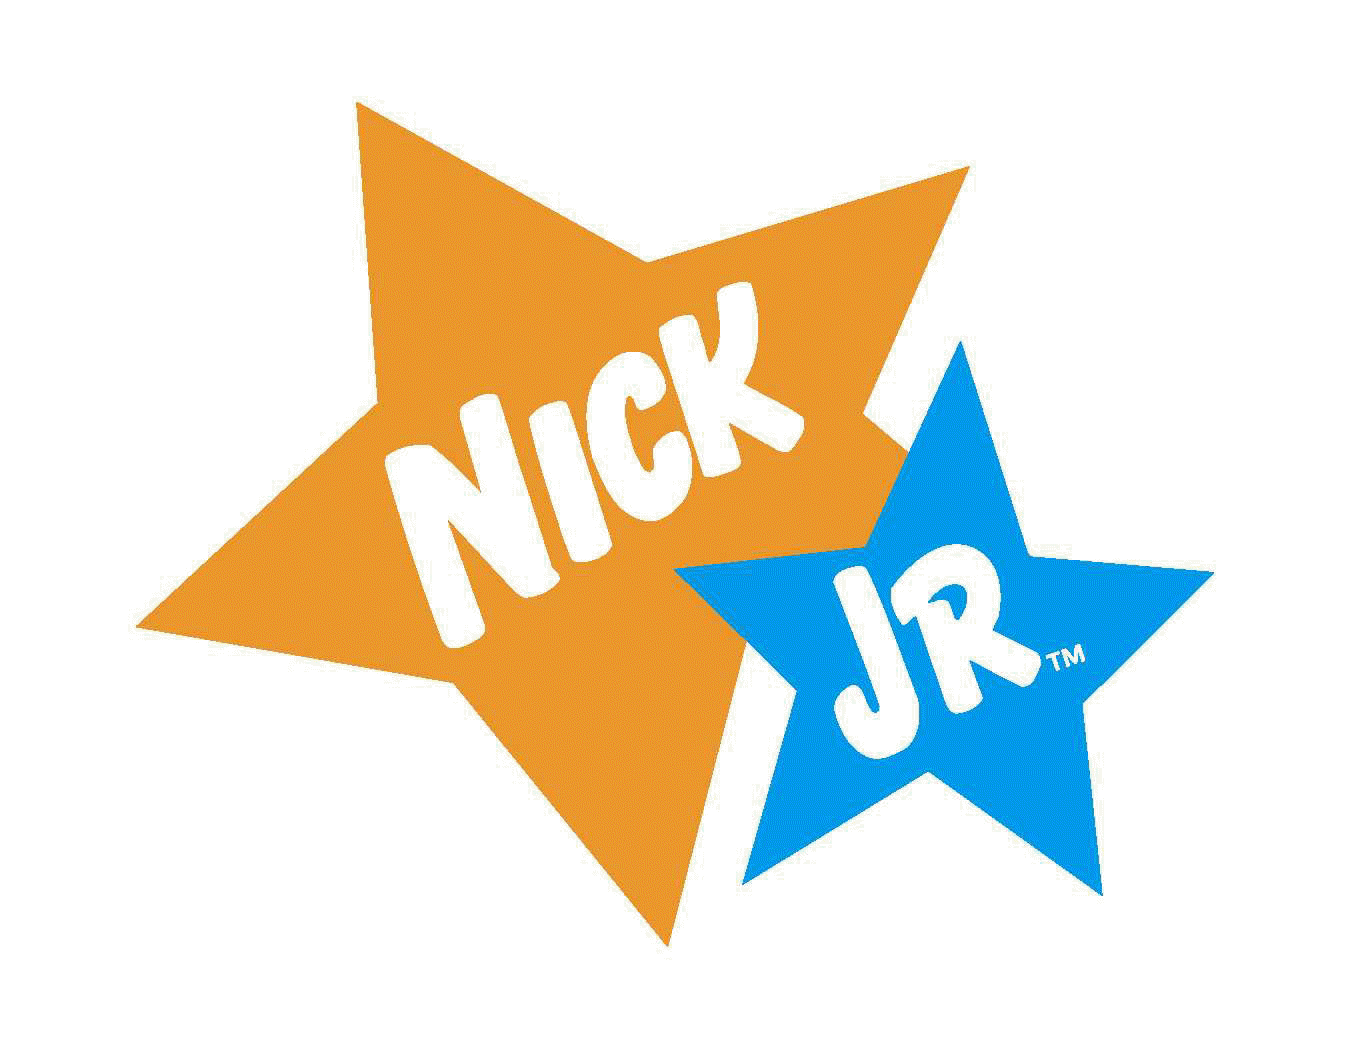 Old Nick Jr Logo - Old nick jr Logos